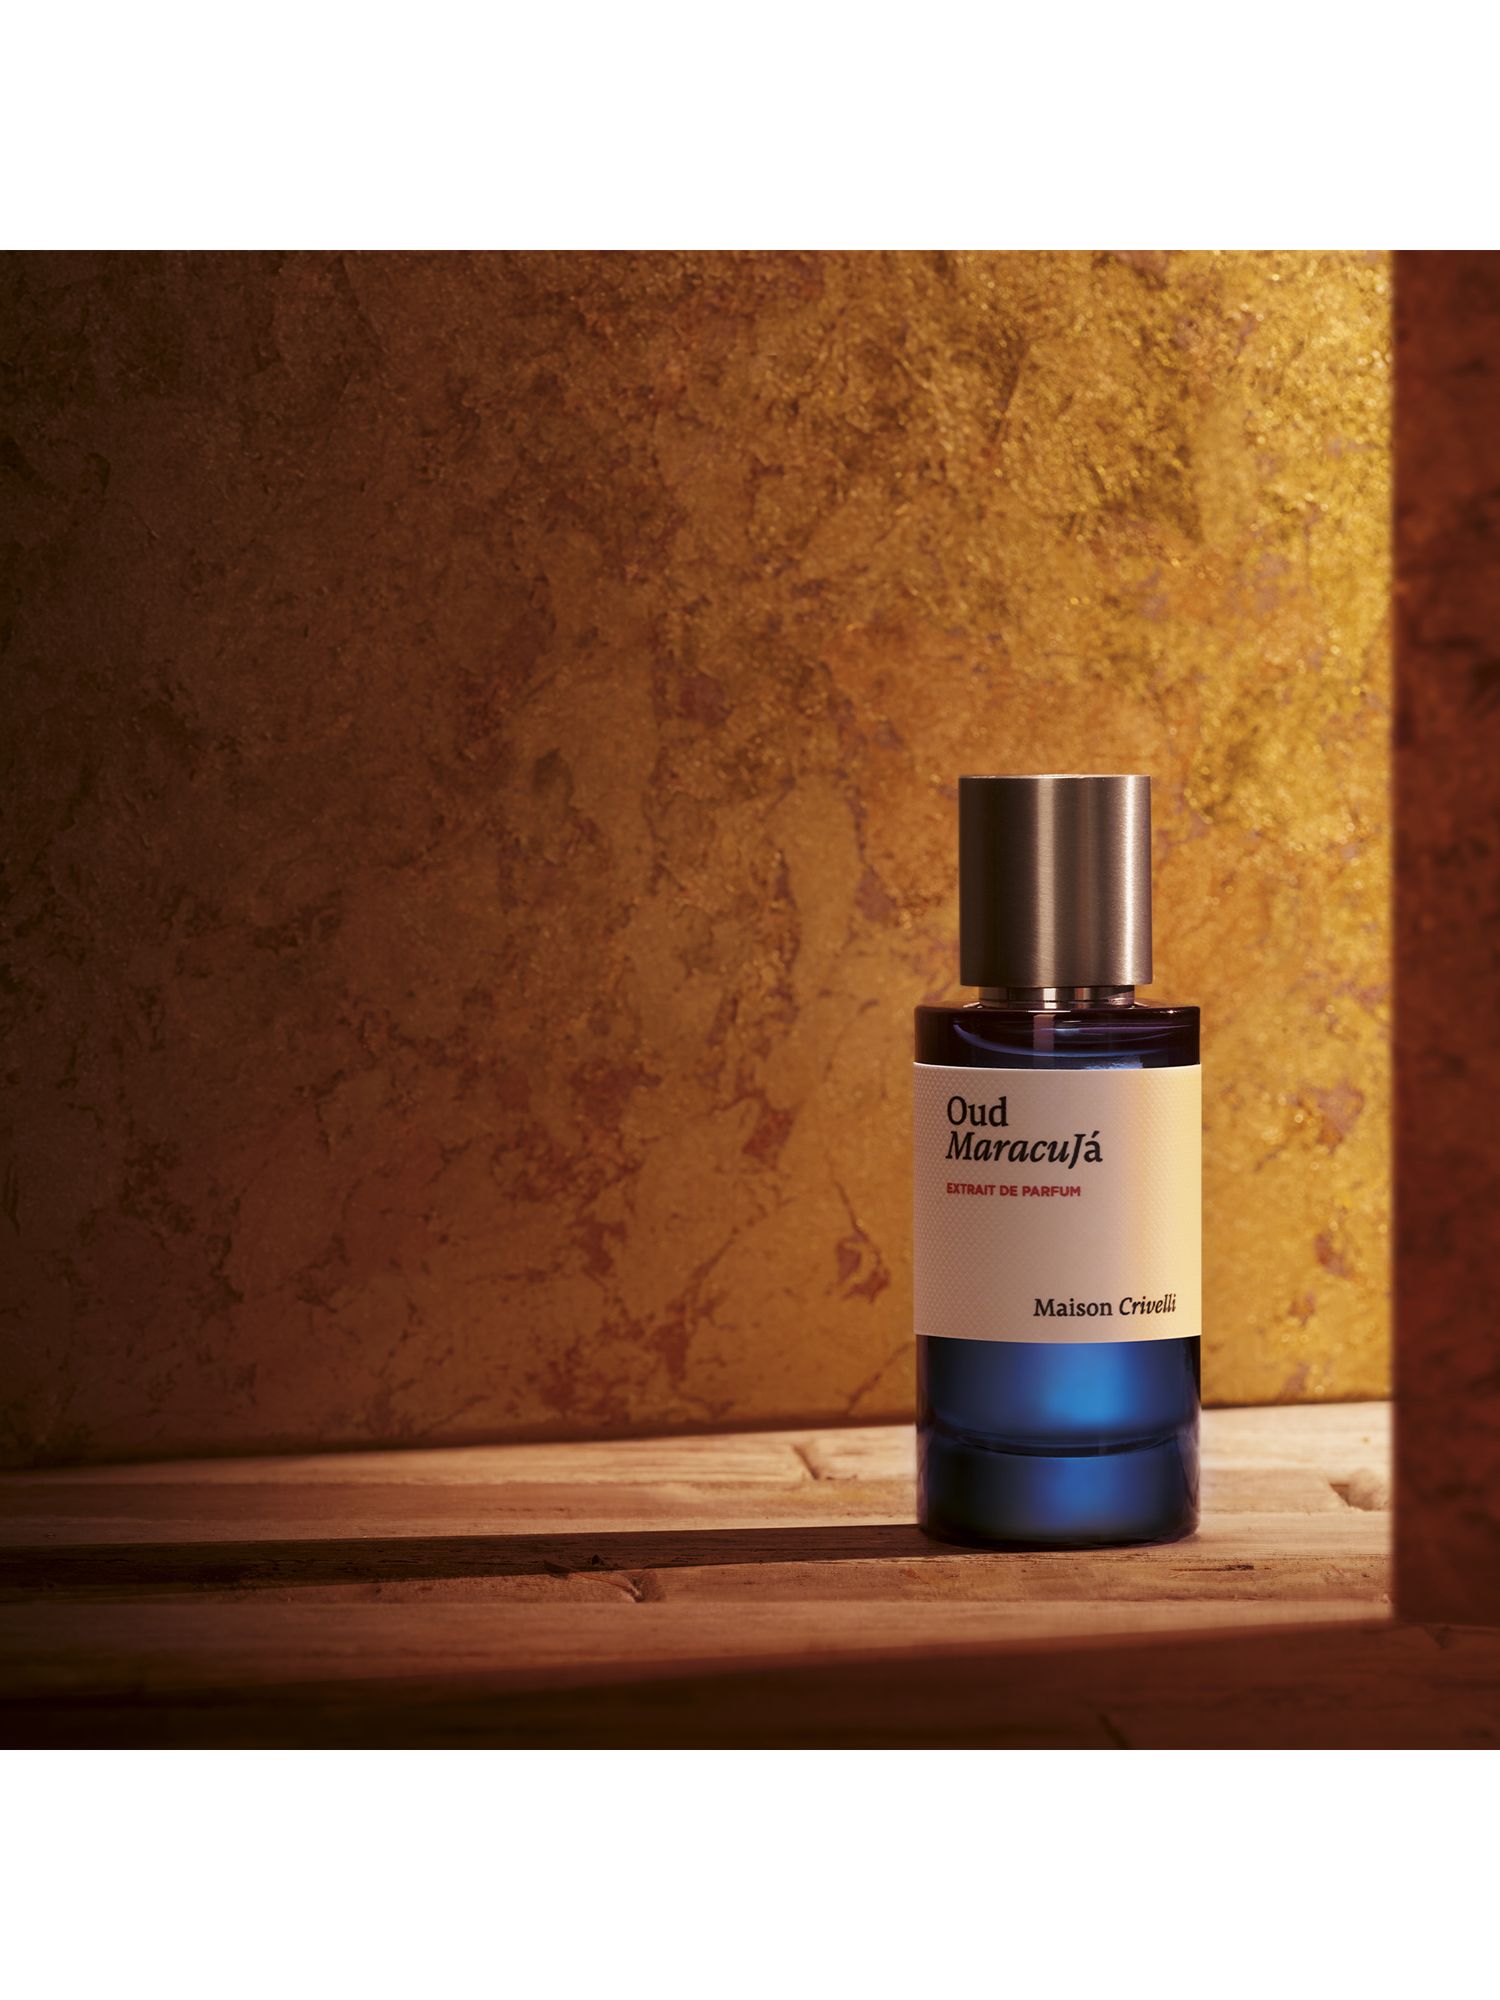 Maison Crivelli Oud Maracuja Extrait de Parfum, 50ml 3